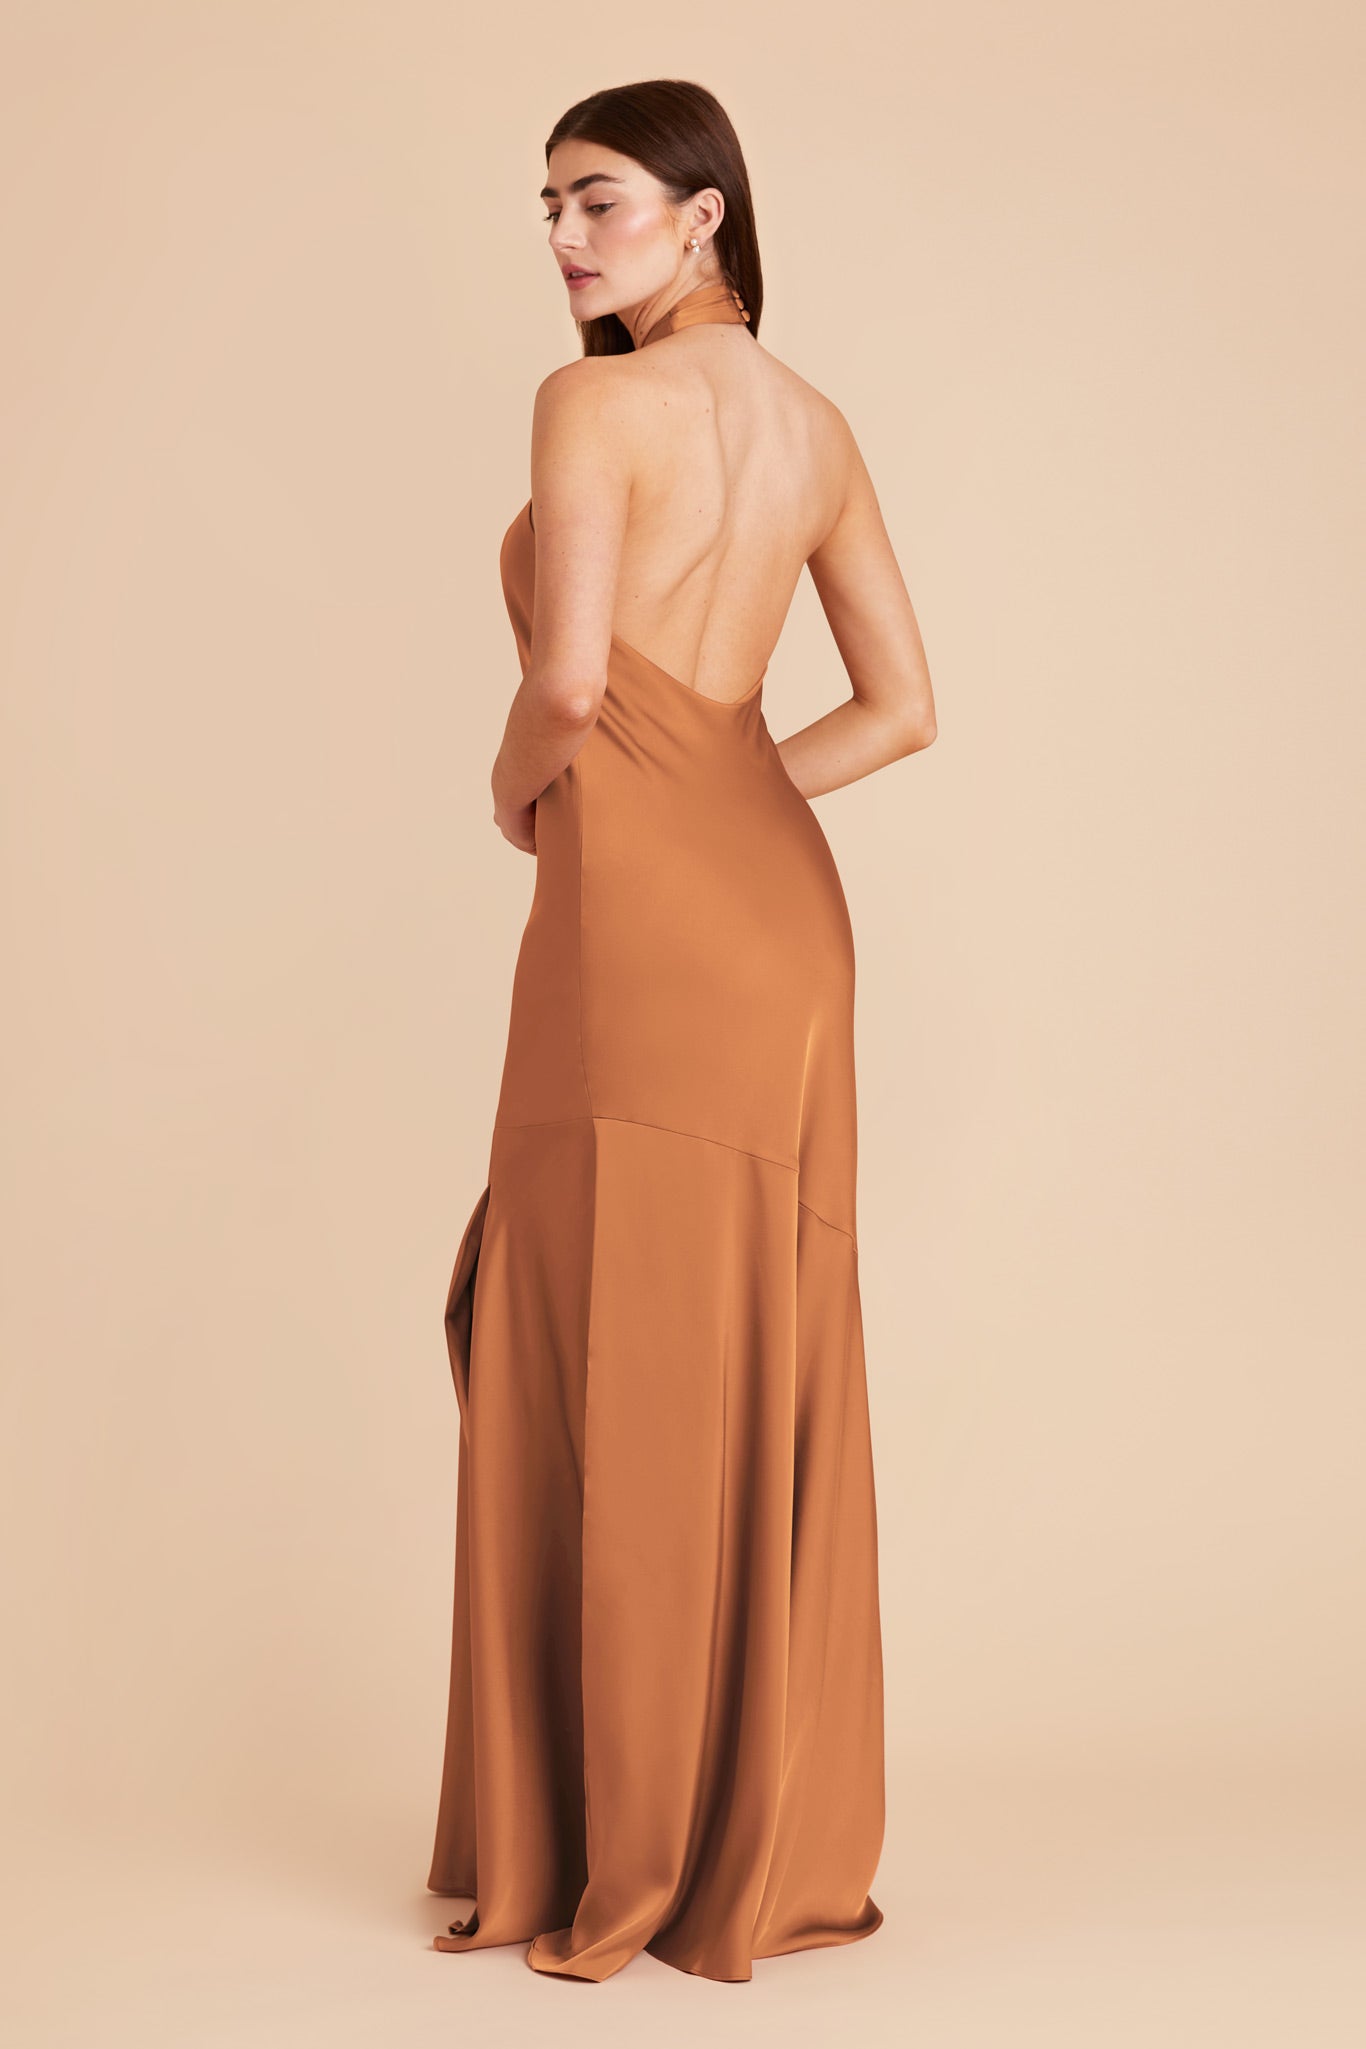 Rust Stephanie Matte Satin Dress by Birdy Grey